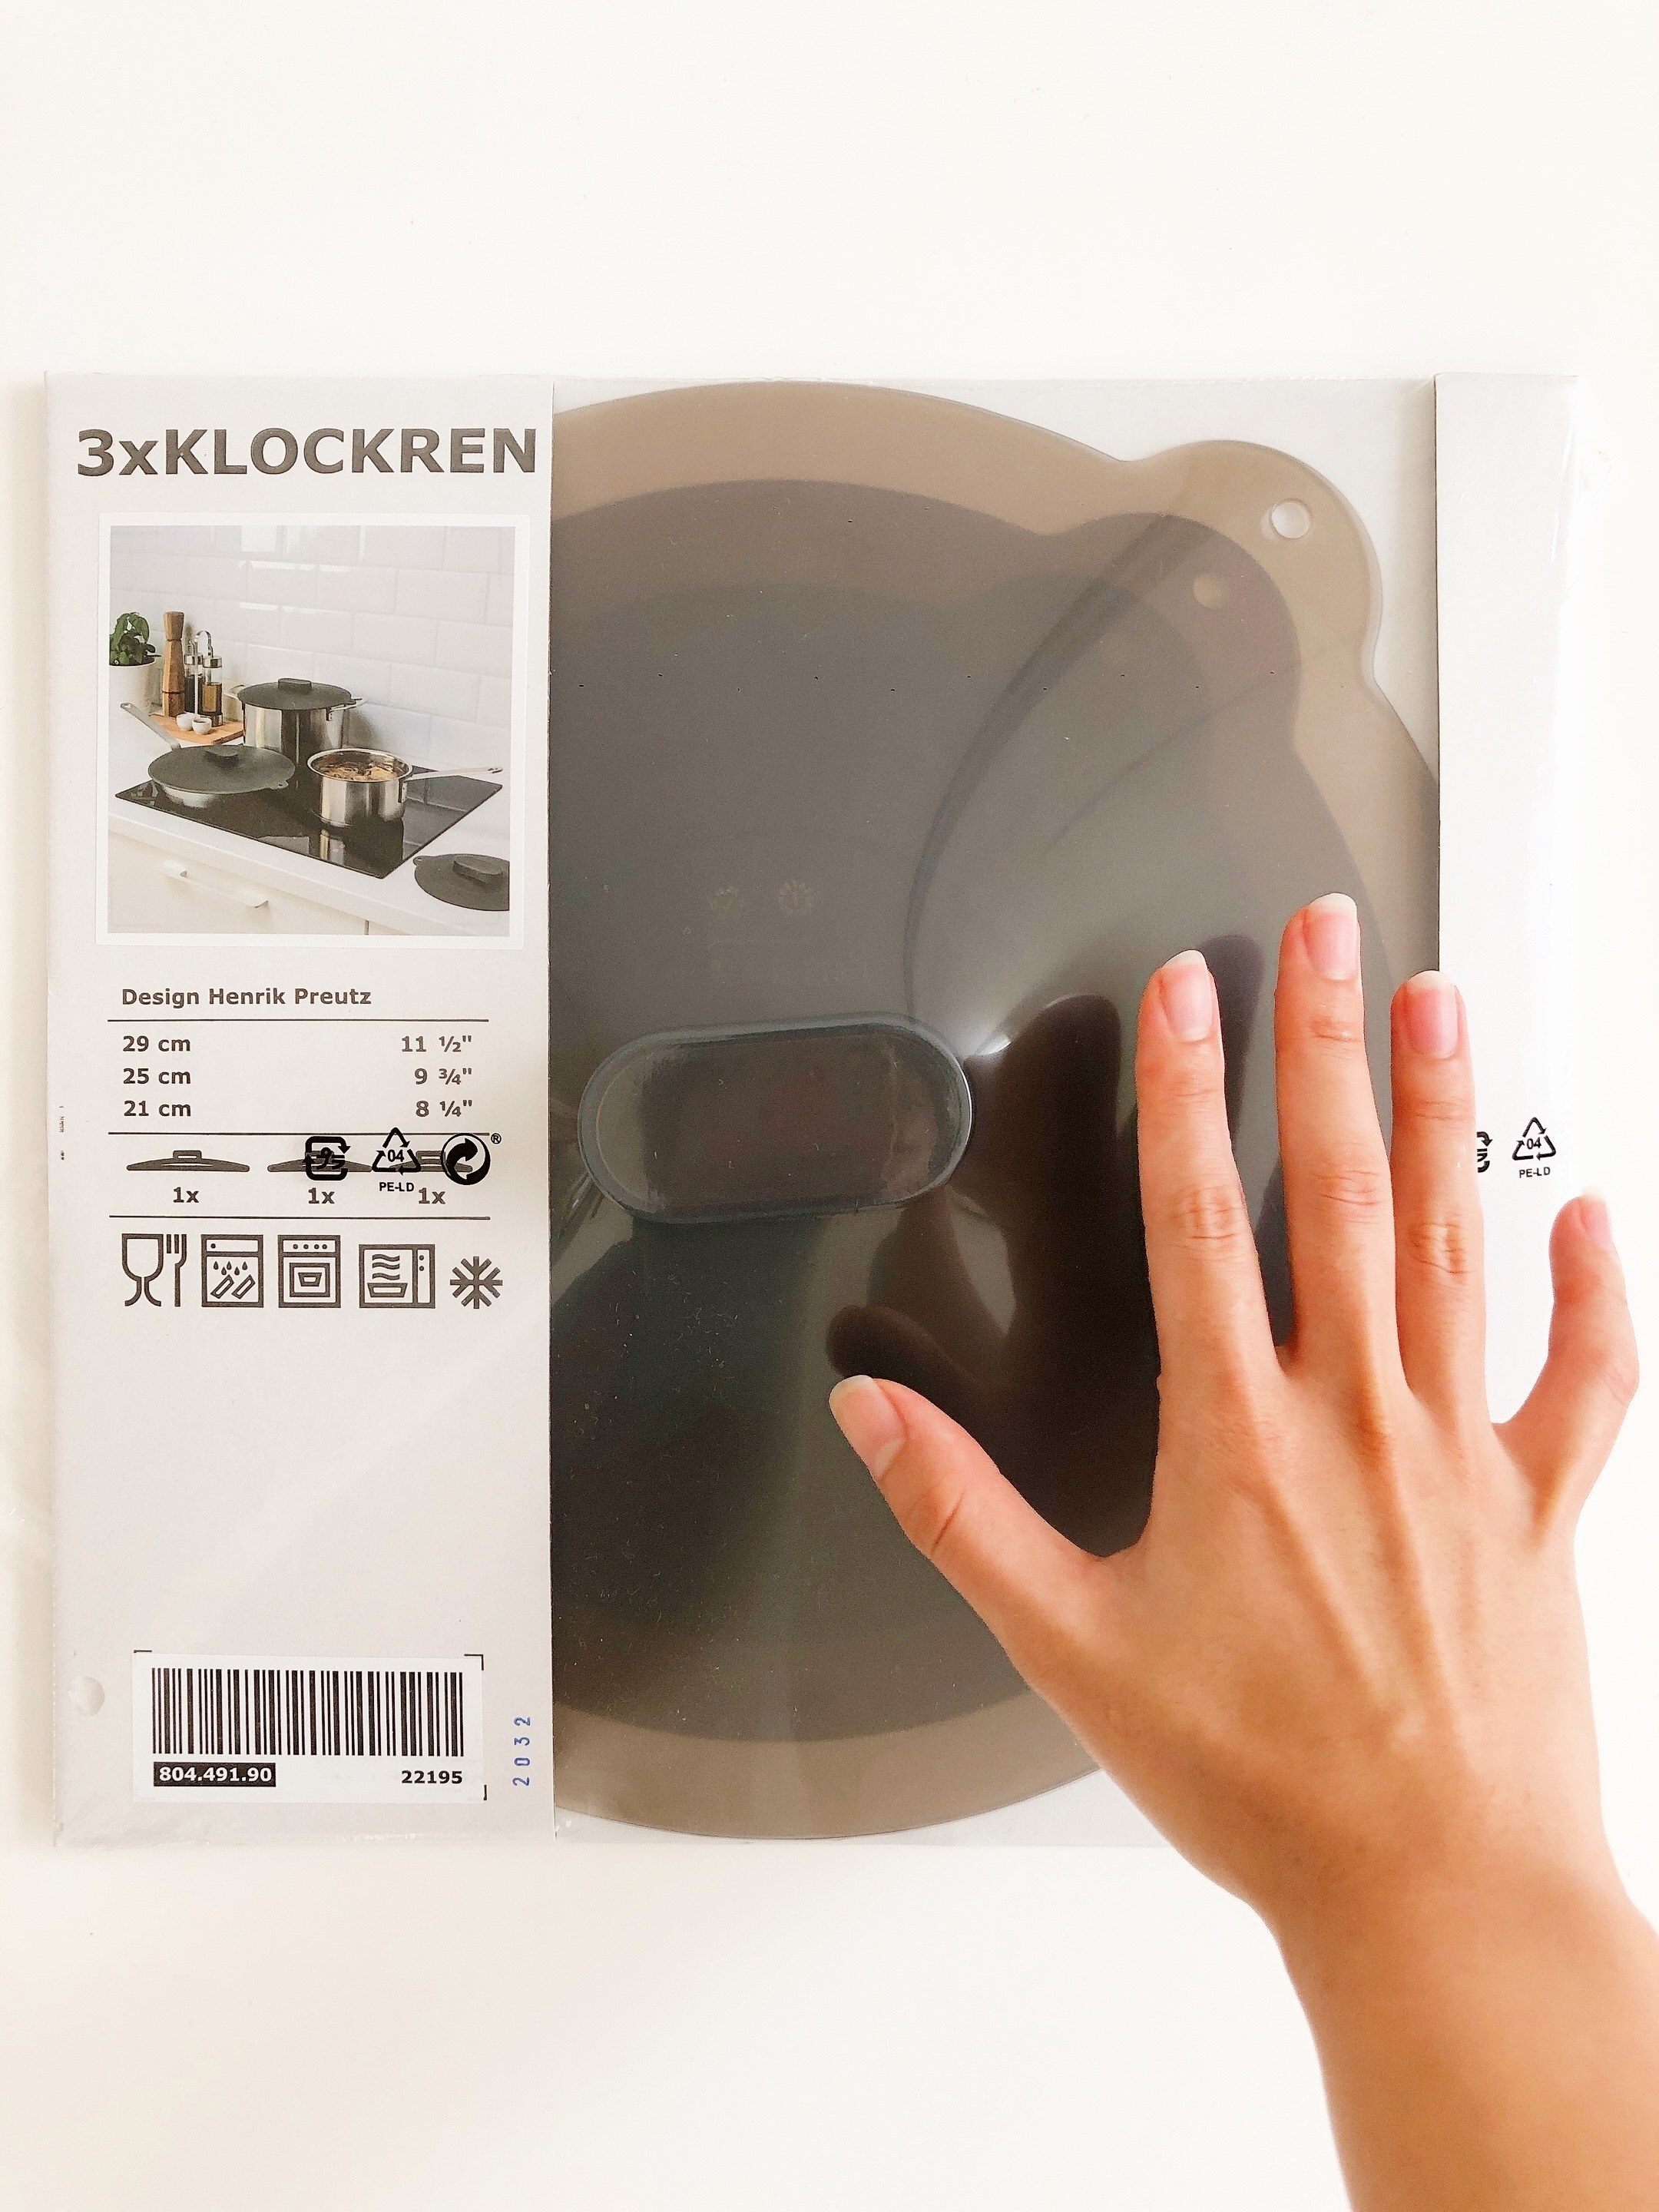 IKEA（イケア）の便利グッズ「KLOCKREN クロックレンユニバーサルふた3点セット」